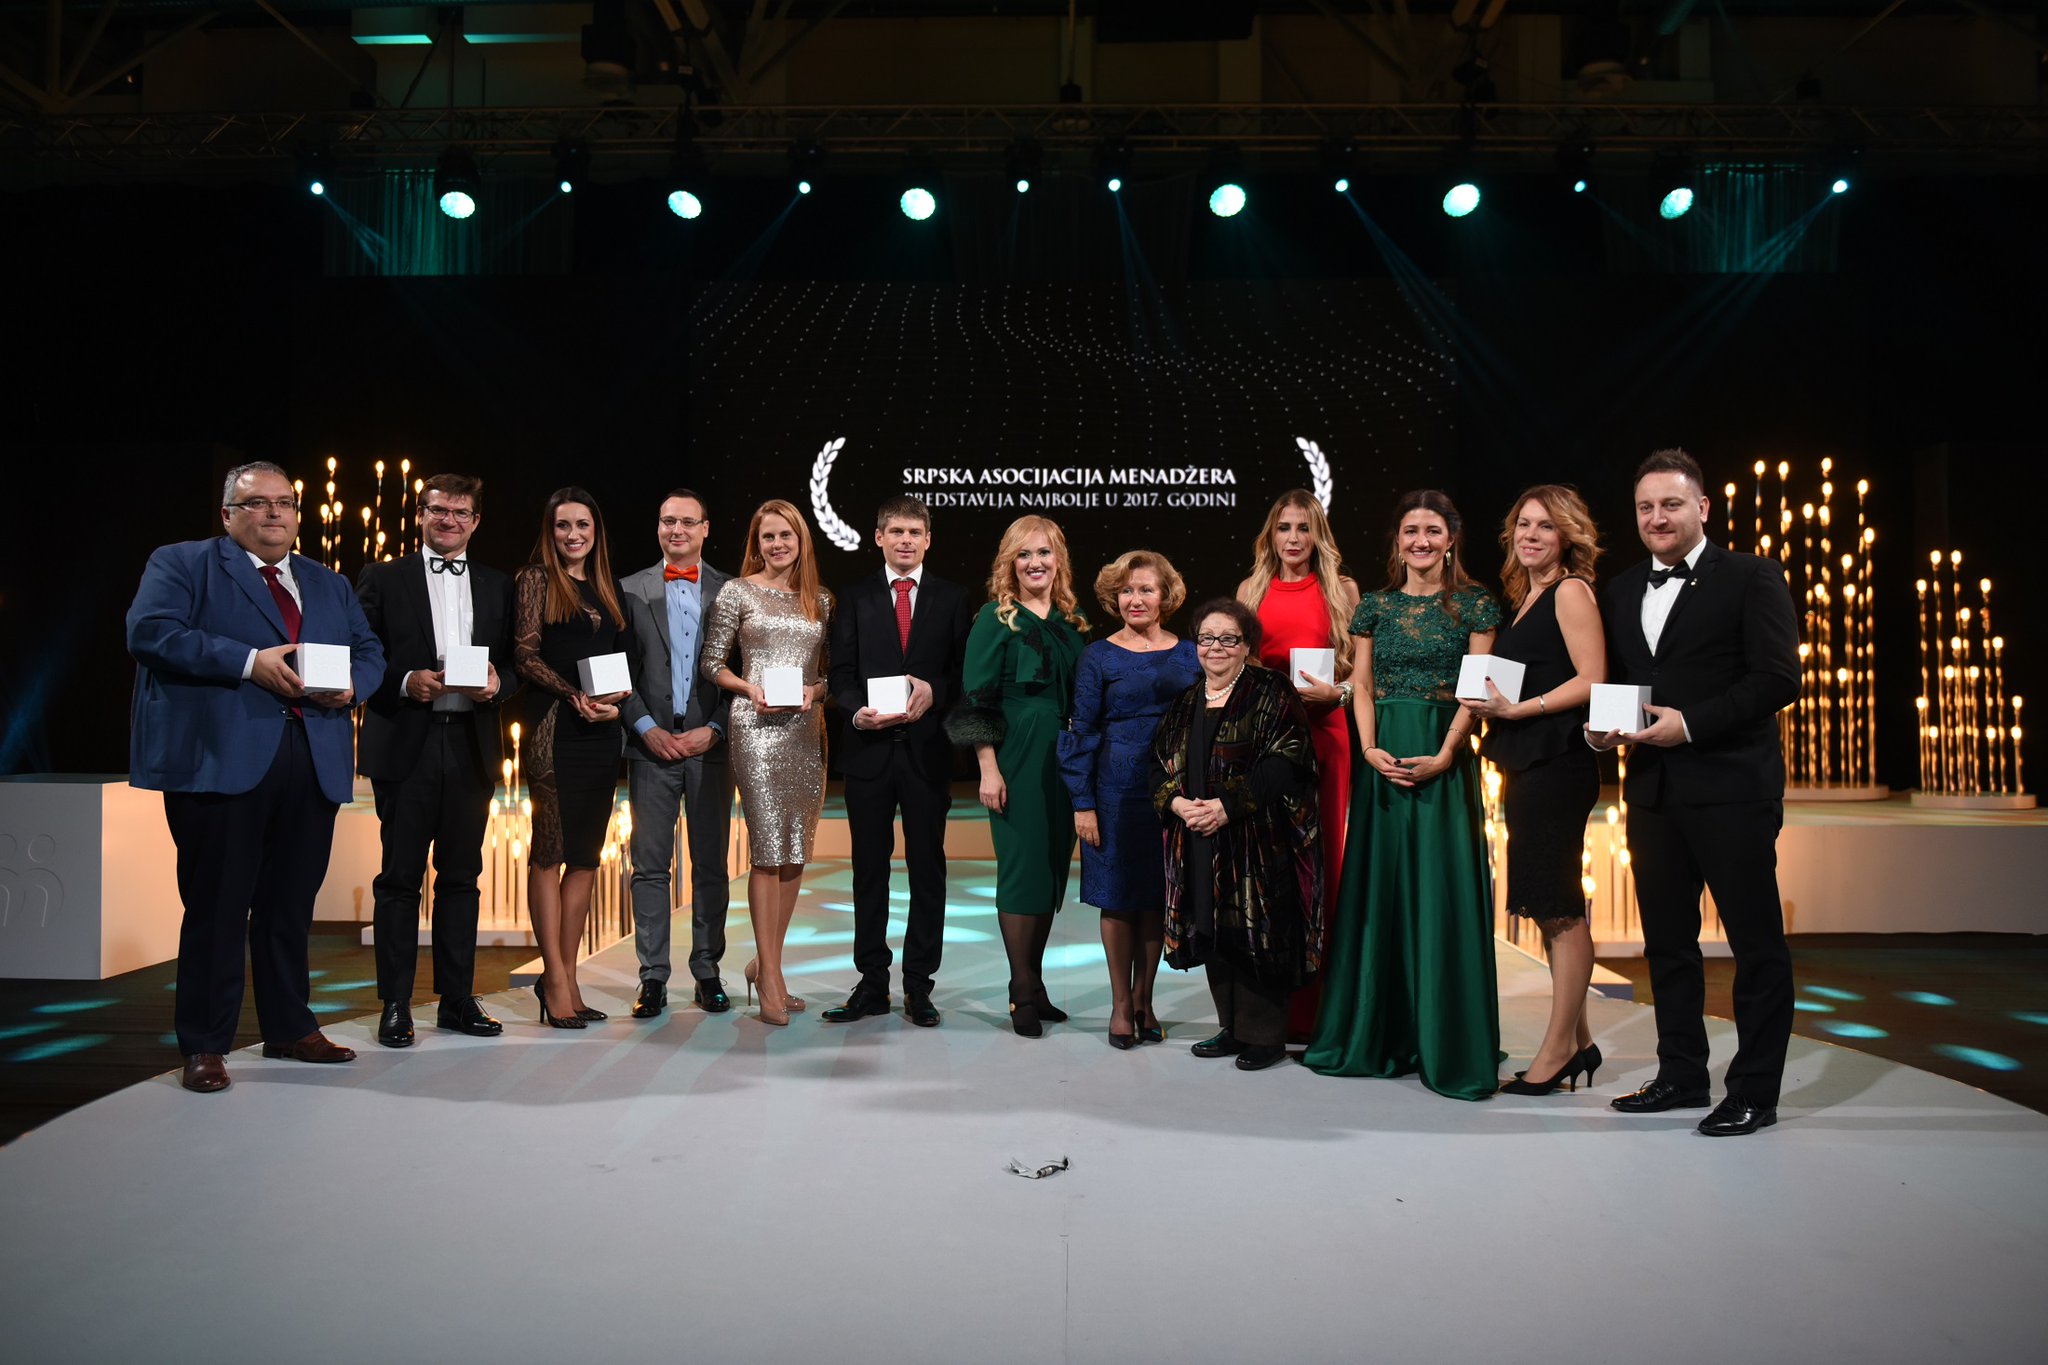 BFPE dobio SAM nagradu za promociju i razvoj liderstva među mladima za 2017. godinu